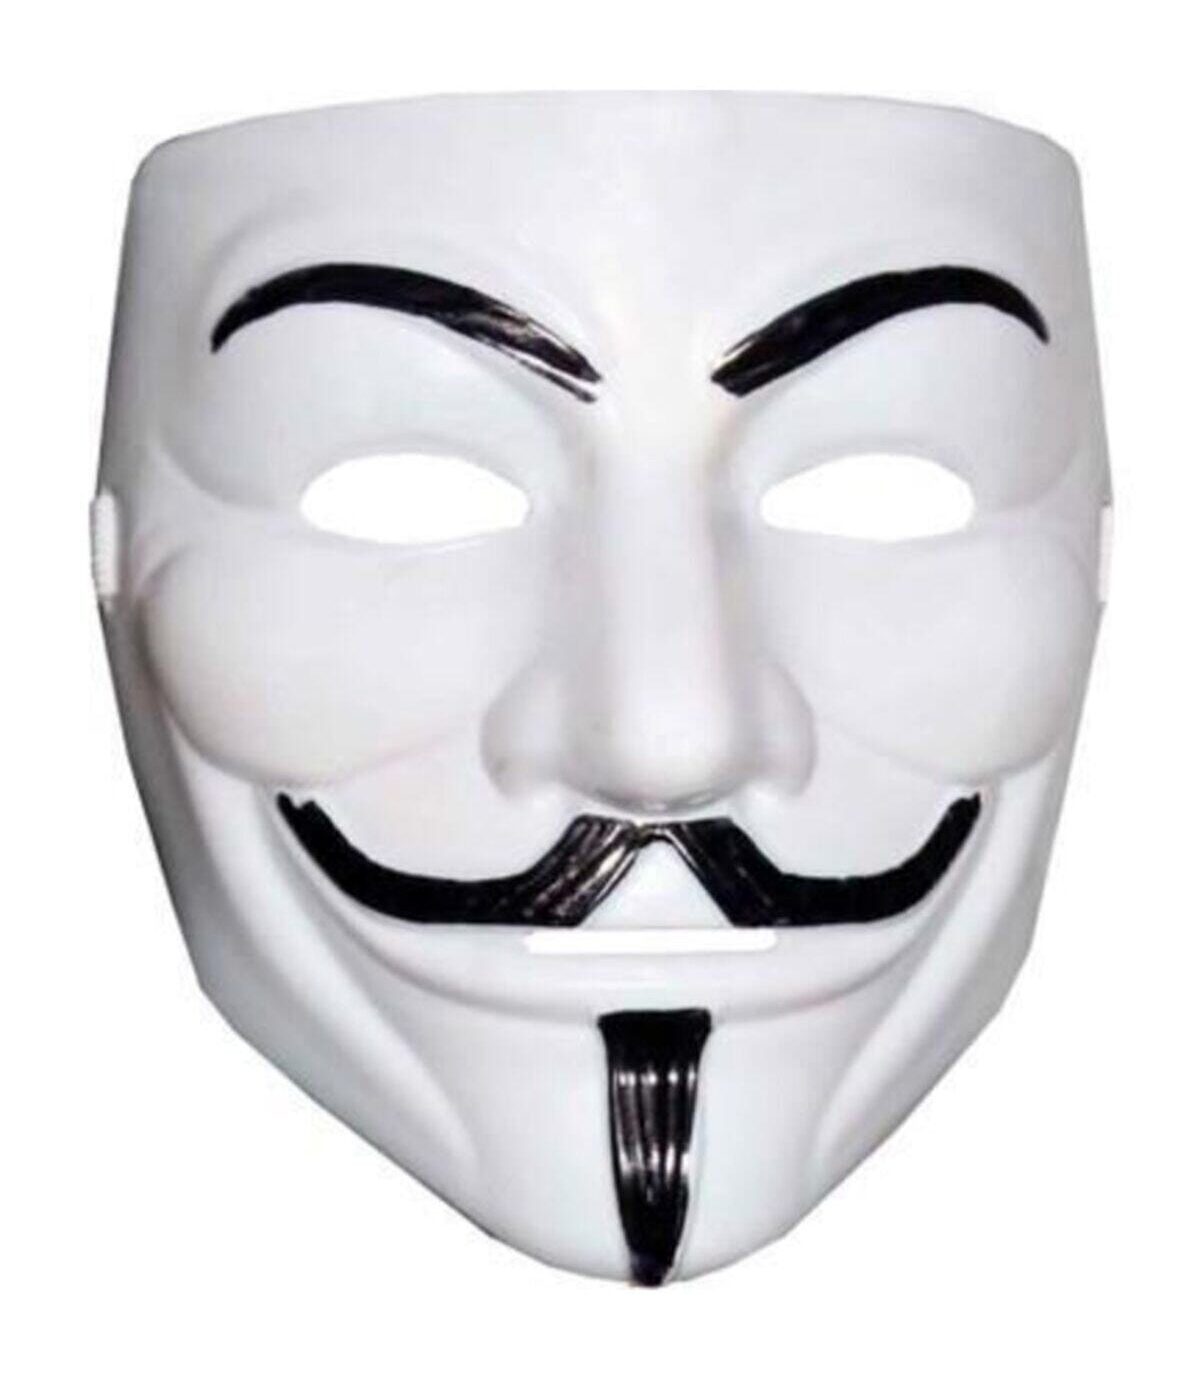 CLZ192 Beyaz Renk V For Vendetta Maskesi Yerli Üretim (4172)